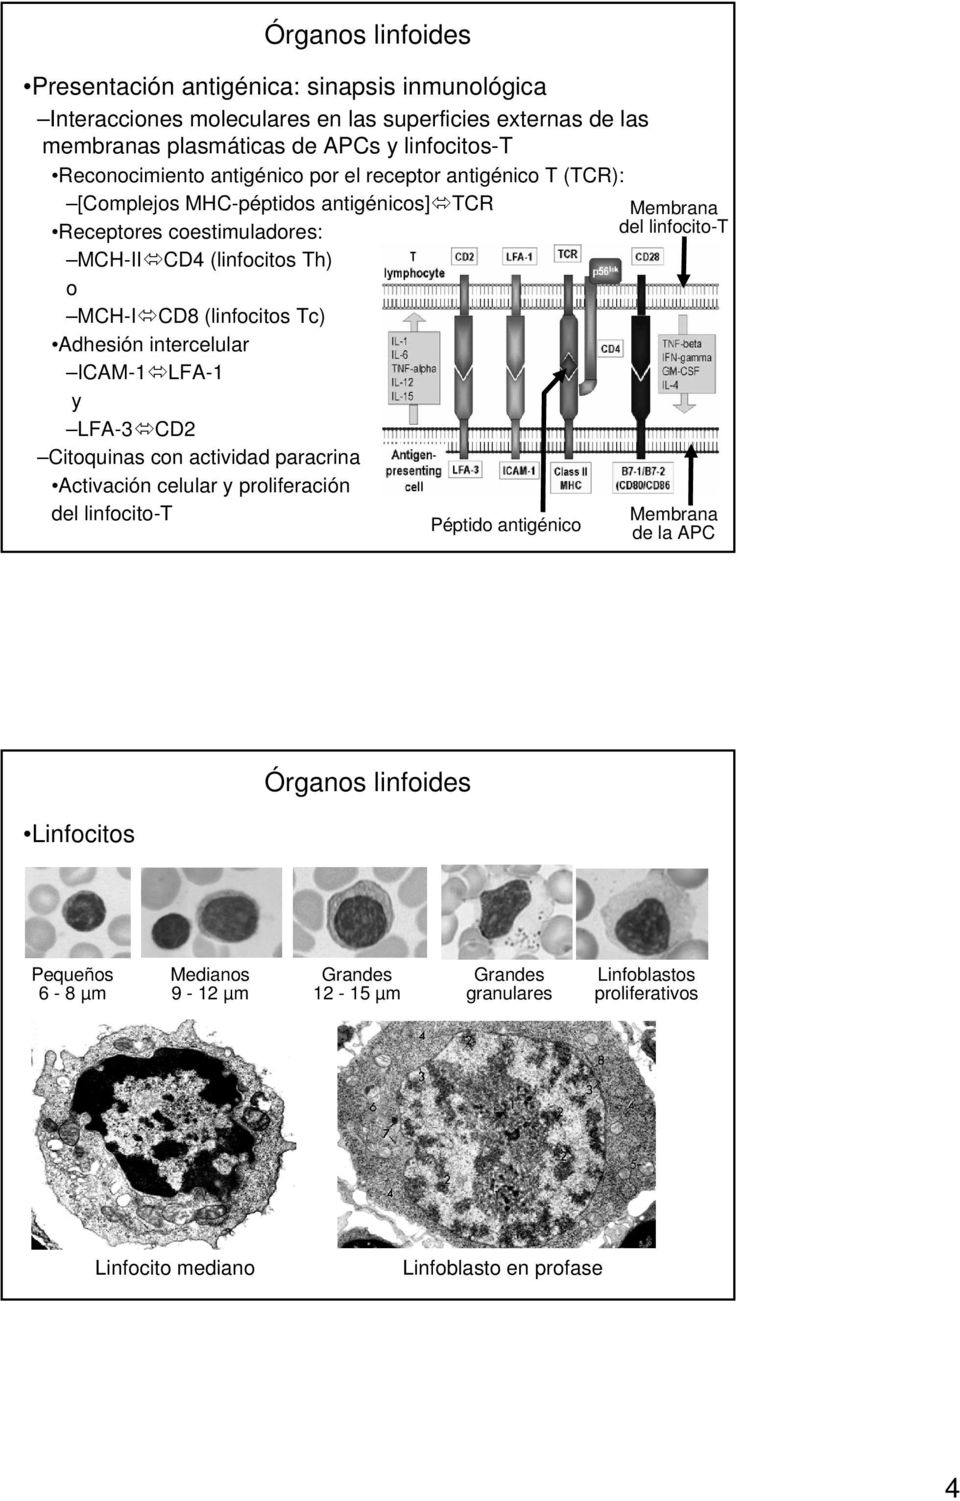 Adhesión intercelular ICAM-1 LFA-1 y LFA-3 CD2 Citoquinas con actividad paracrina Activación celular y proliferación del linfocito-t Péptido antigénico Membrana del